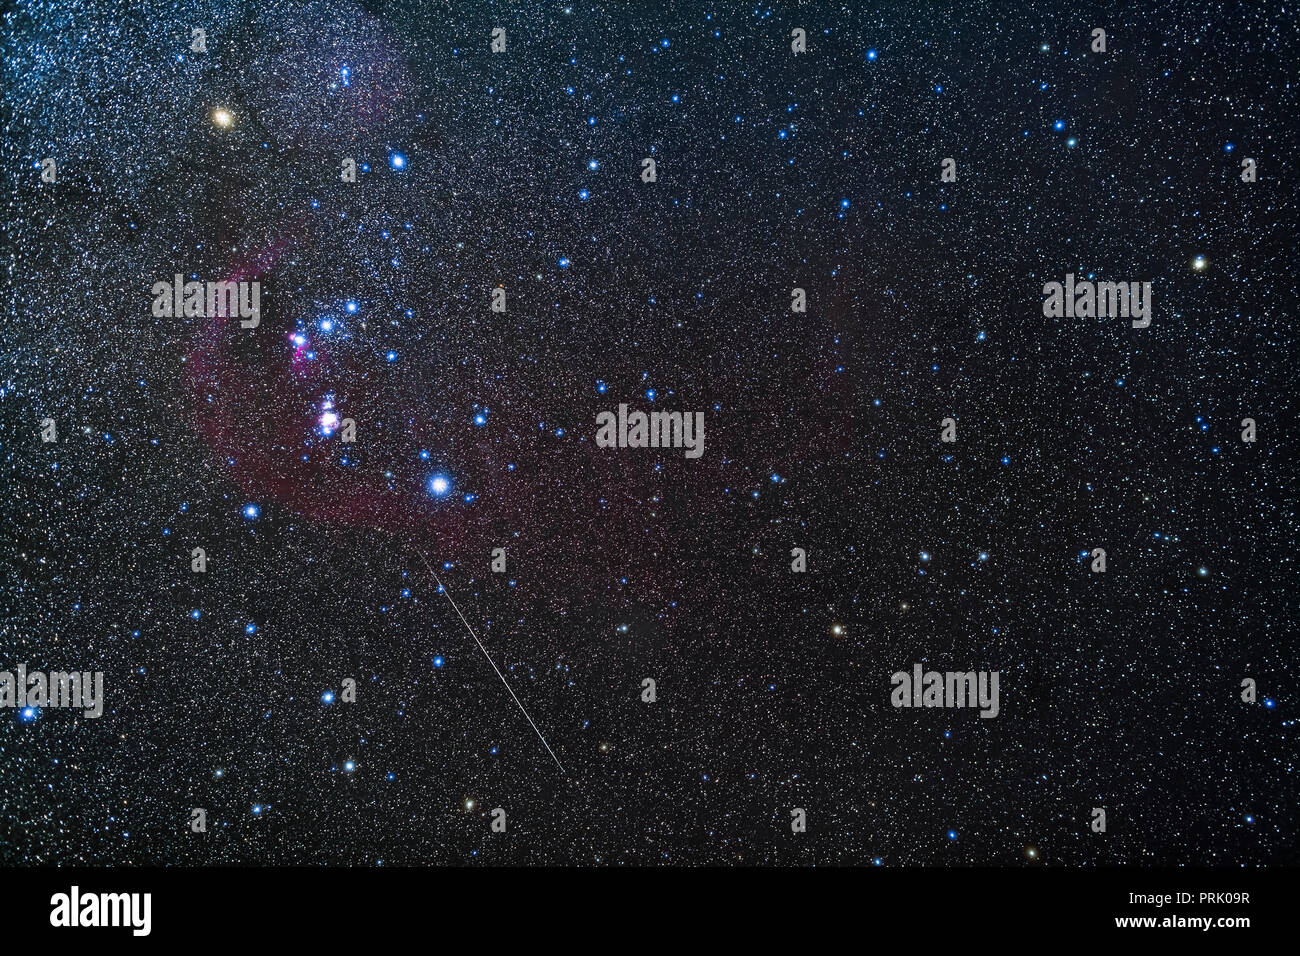 Les constellations d'Orion le chasseur et l'Eridan la rivière (à droite), avec le bonus d'un météore Geminid ci-dessous d'Orion, à travers Lepus le lièvre. E Banque D'Images